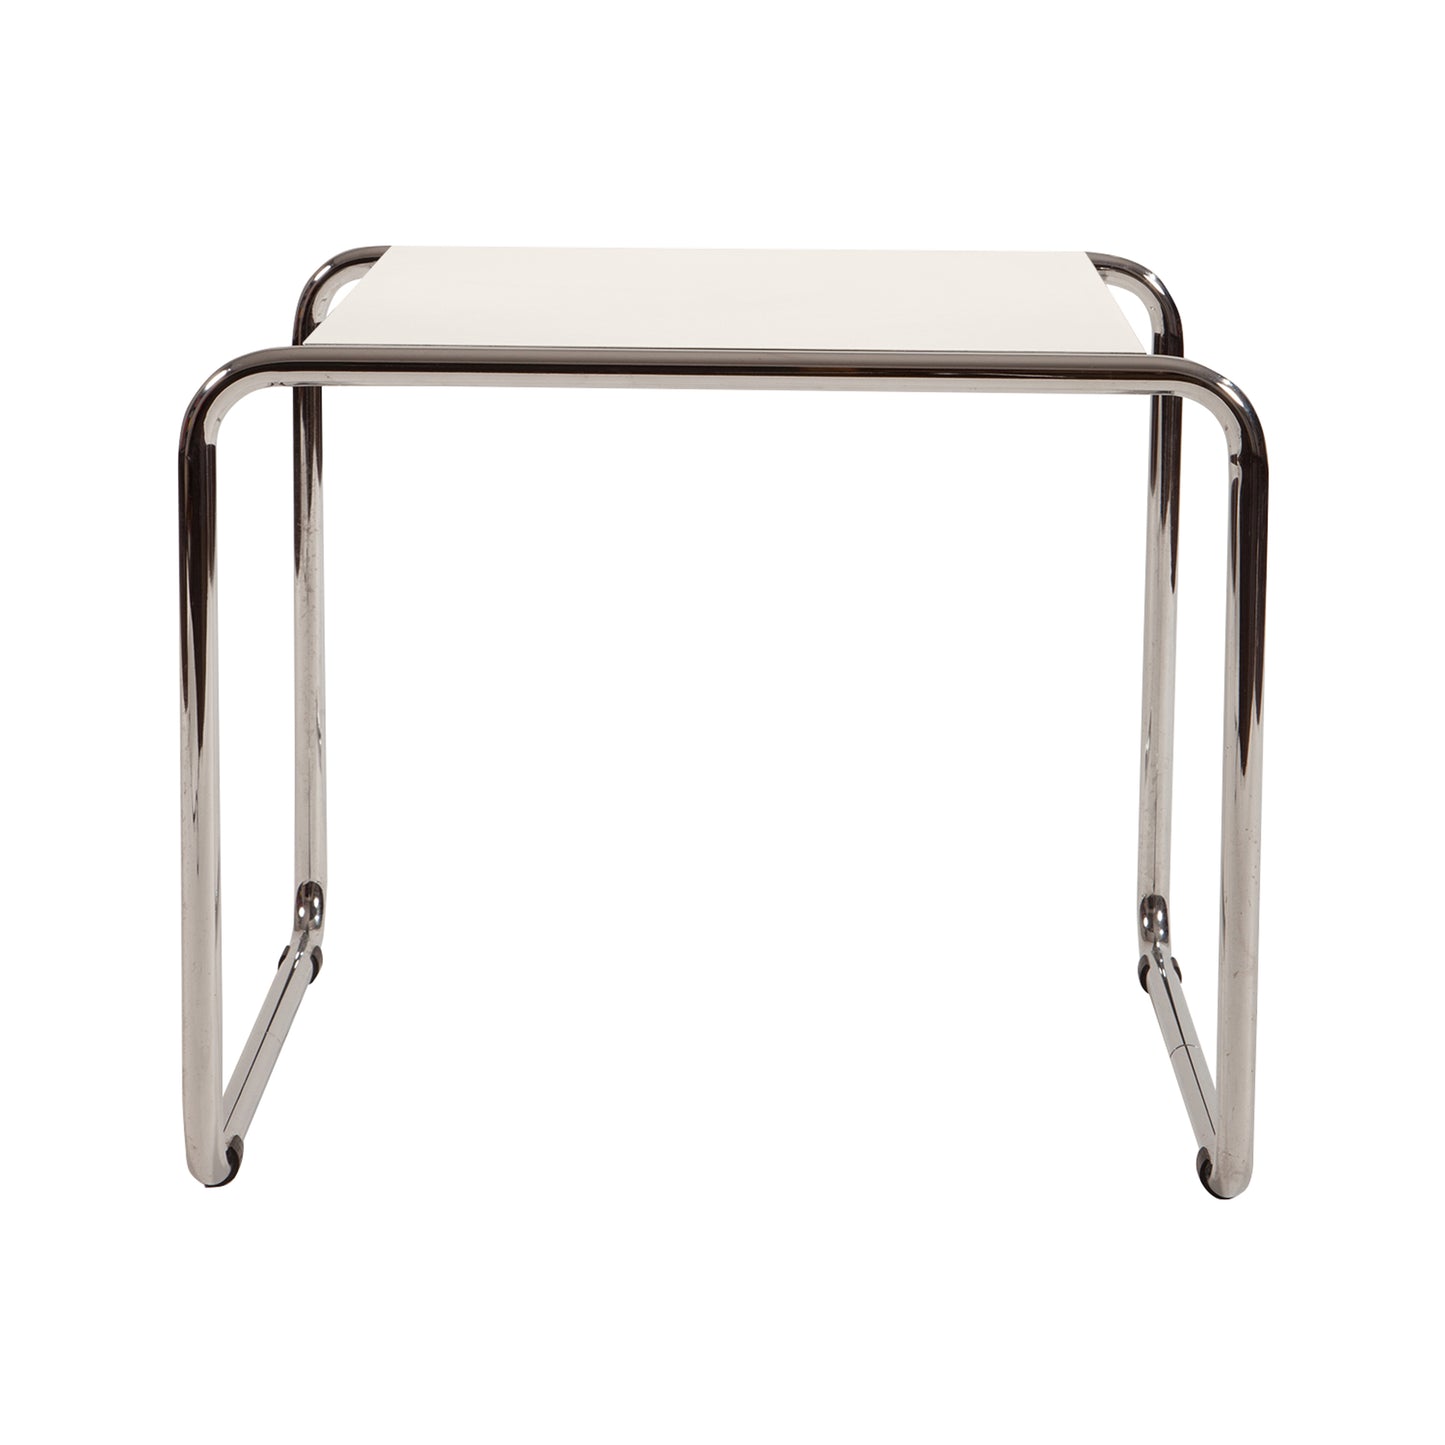 Laccio table style | White | Side